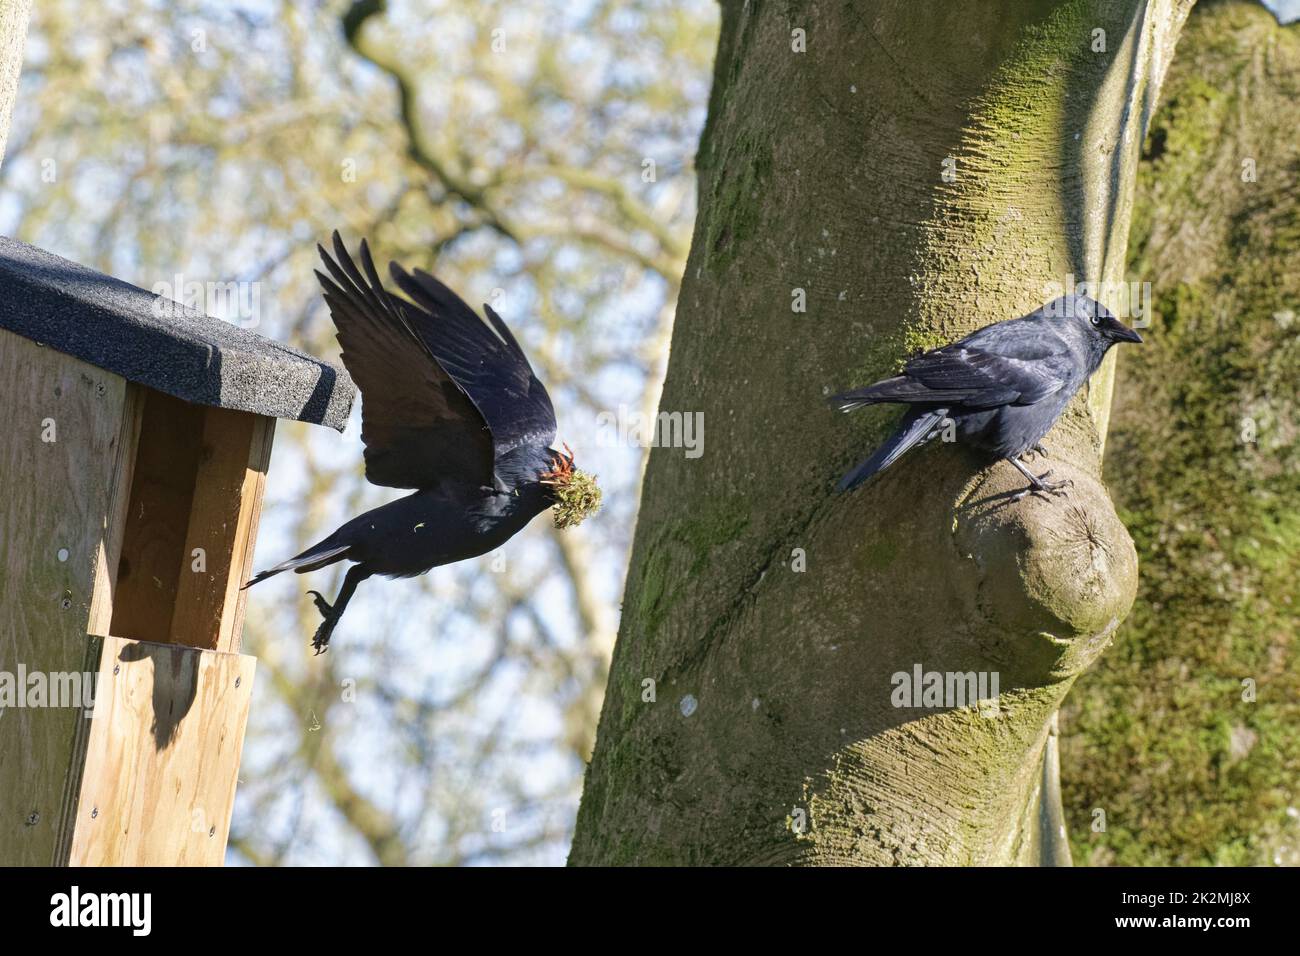 Jackdaw (Corvus monedula) volando desde una caja de nido con un montón de musgo viejo antes de la reconstrucción, con su compañero encaramado cerca, Wiltshire, Reino Unido, marzo. Foto de stock